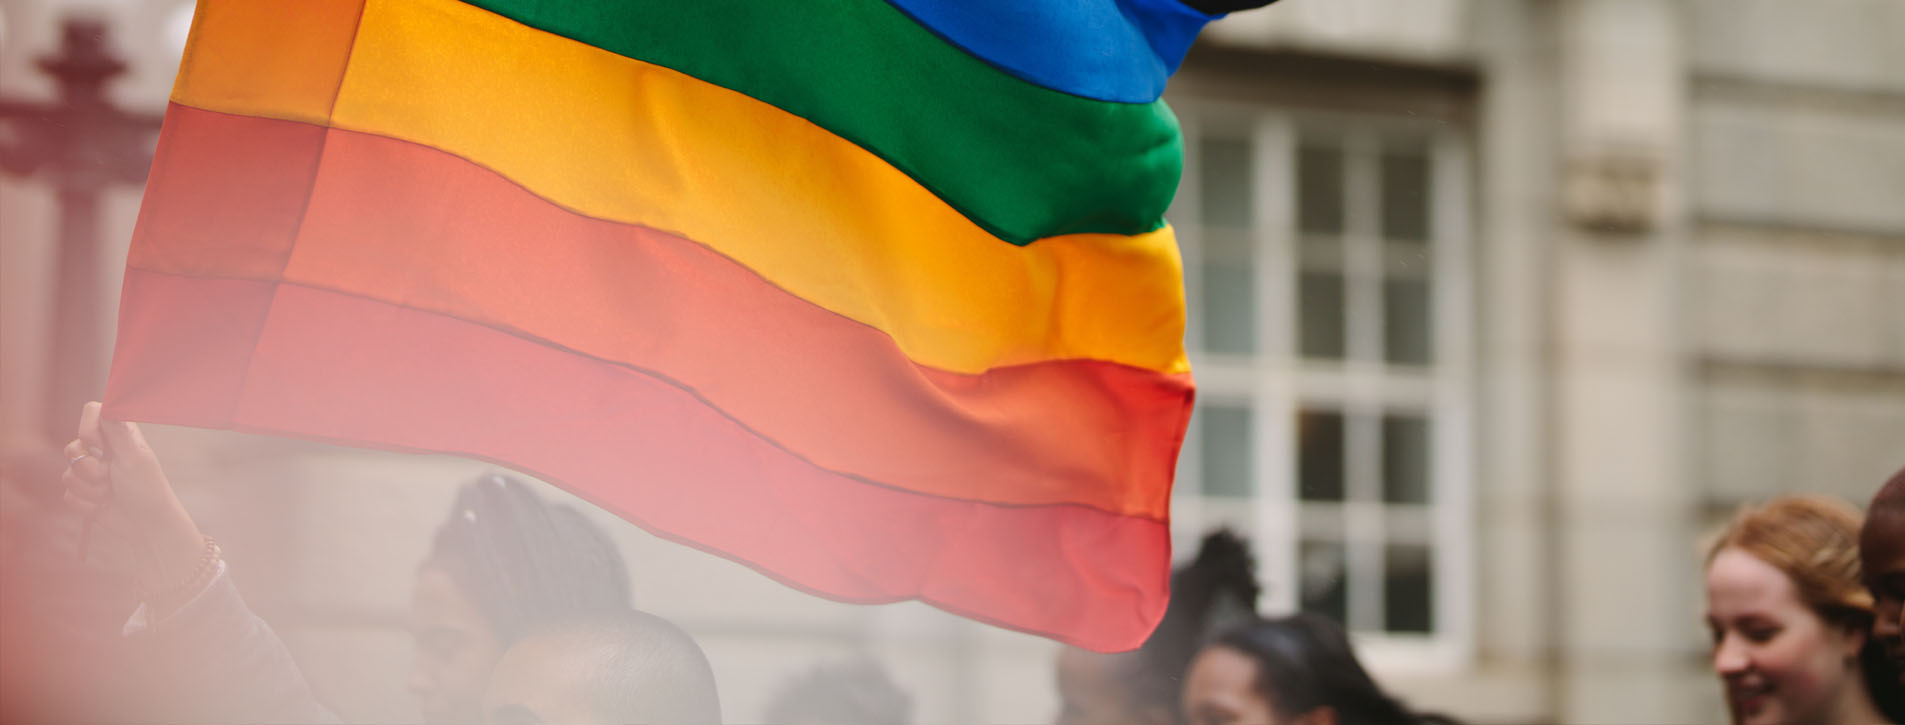 10 Formas de Promover uma Cultura de Respeito e Pertença Para com Pessoas Trabalhadoras LGBTQI+